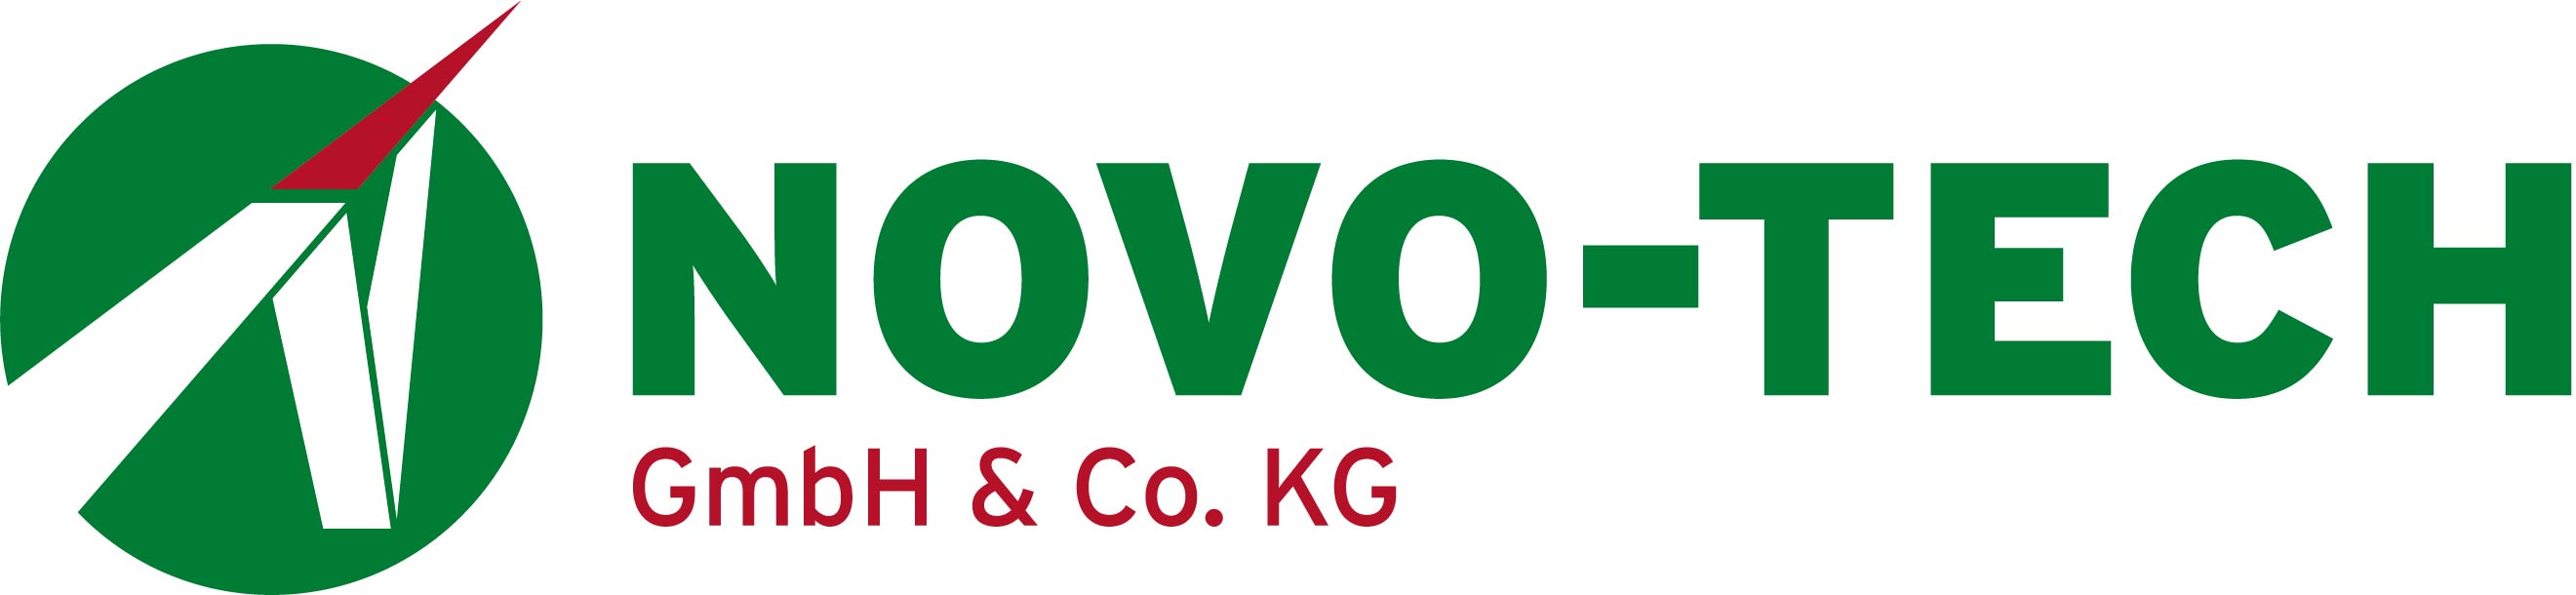 Novo-Tech GmbH & Co KG